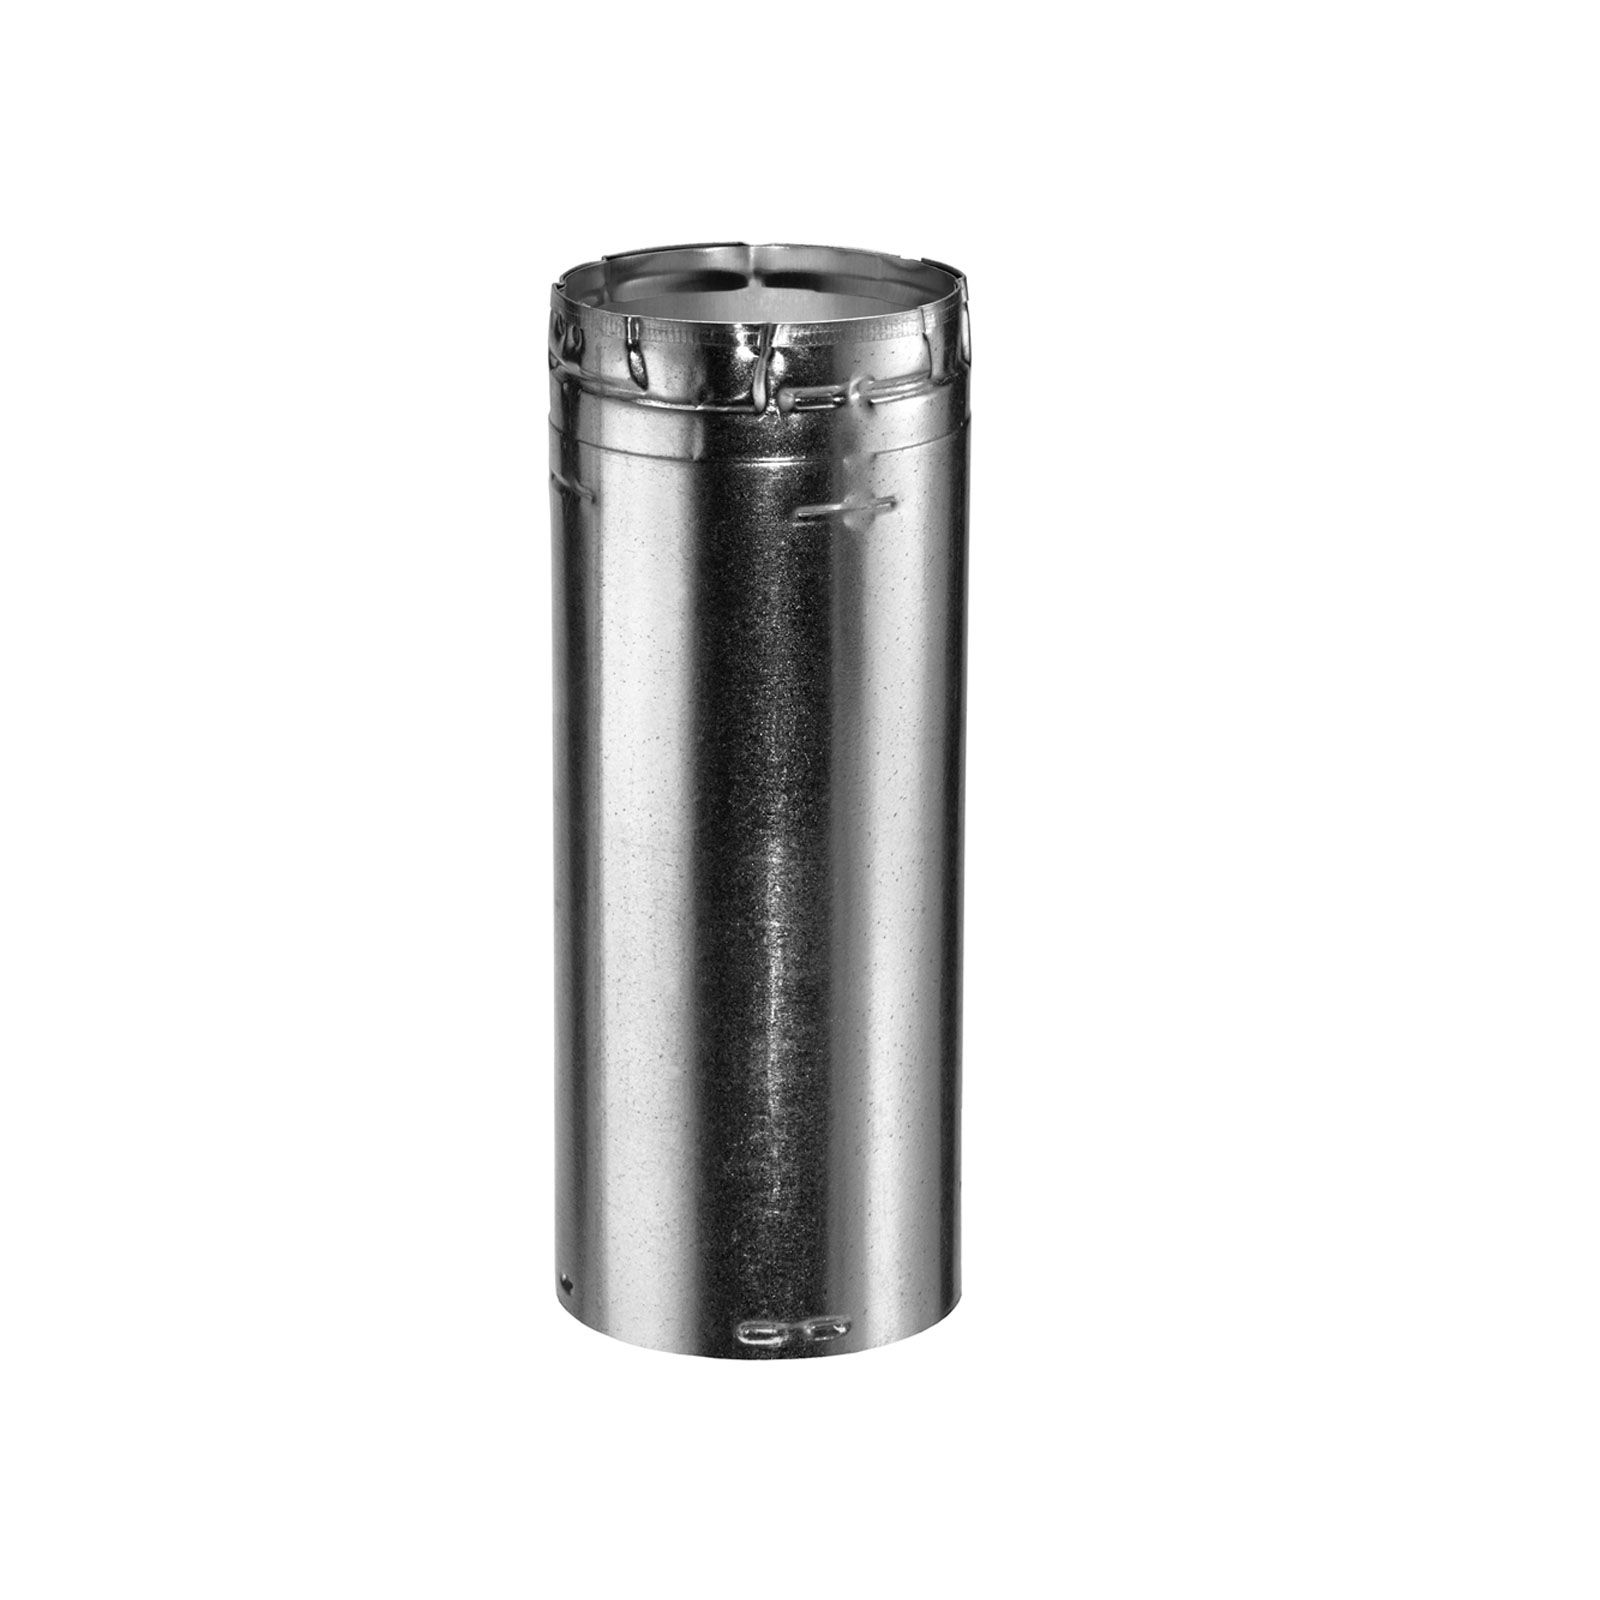 DuraVent 3GV06 - Aluminum 6" Length Round Rigid Pipe with 3" Inner Diameter